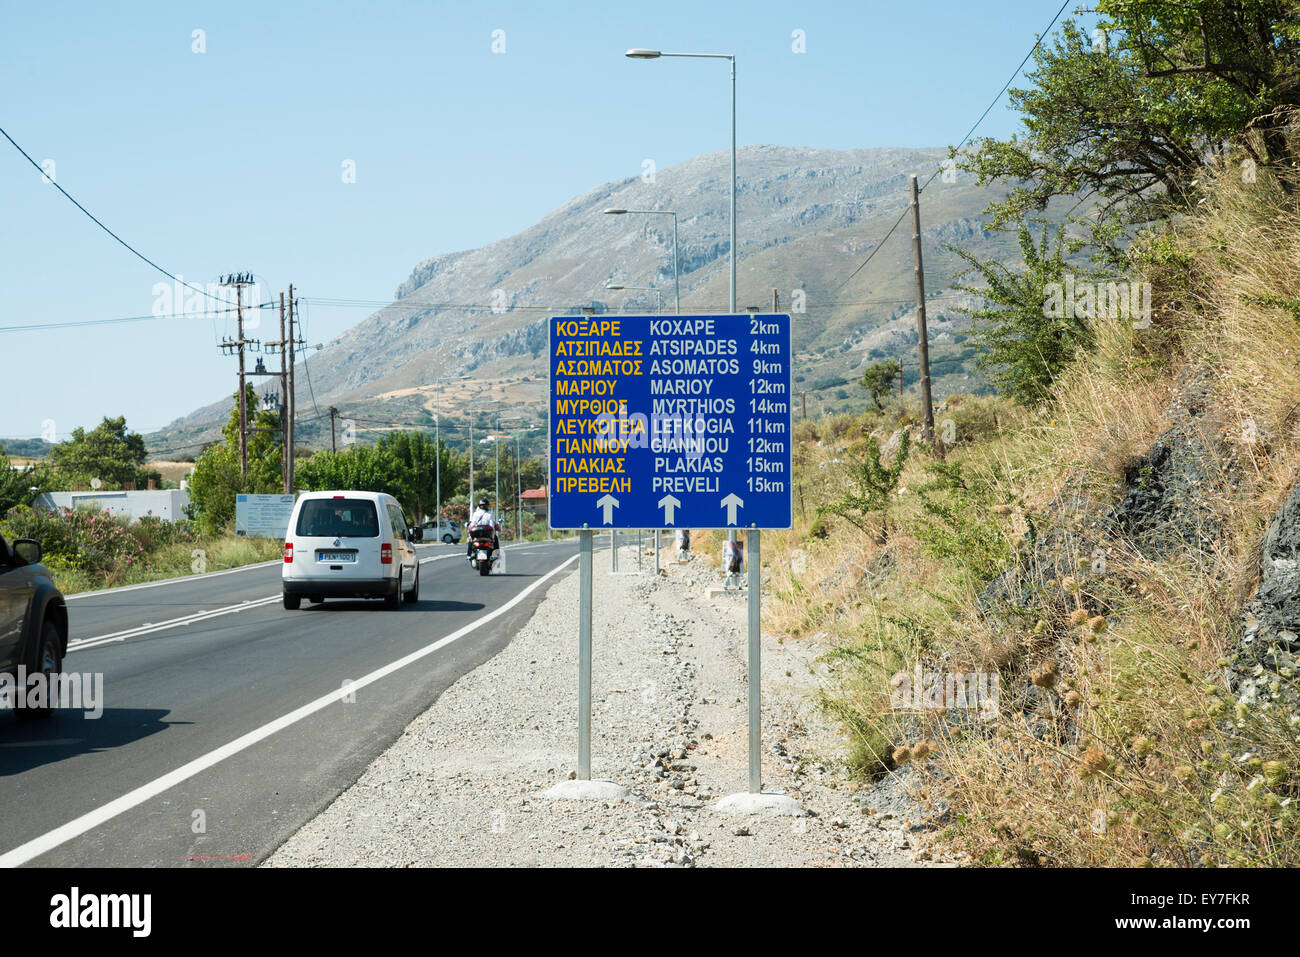 Road sign near Pale, Crete, Greece Stock Photo